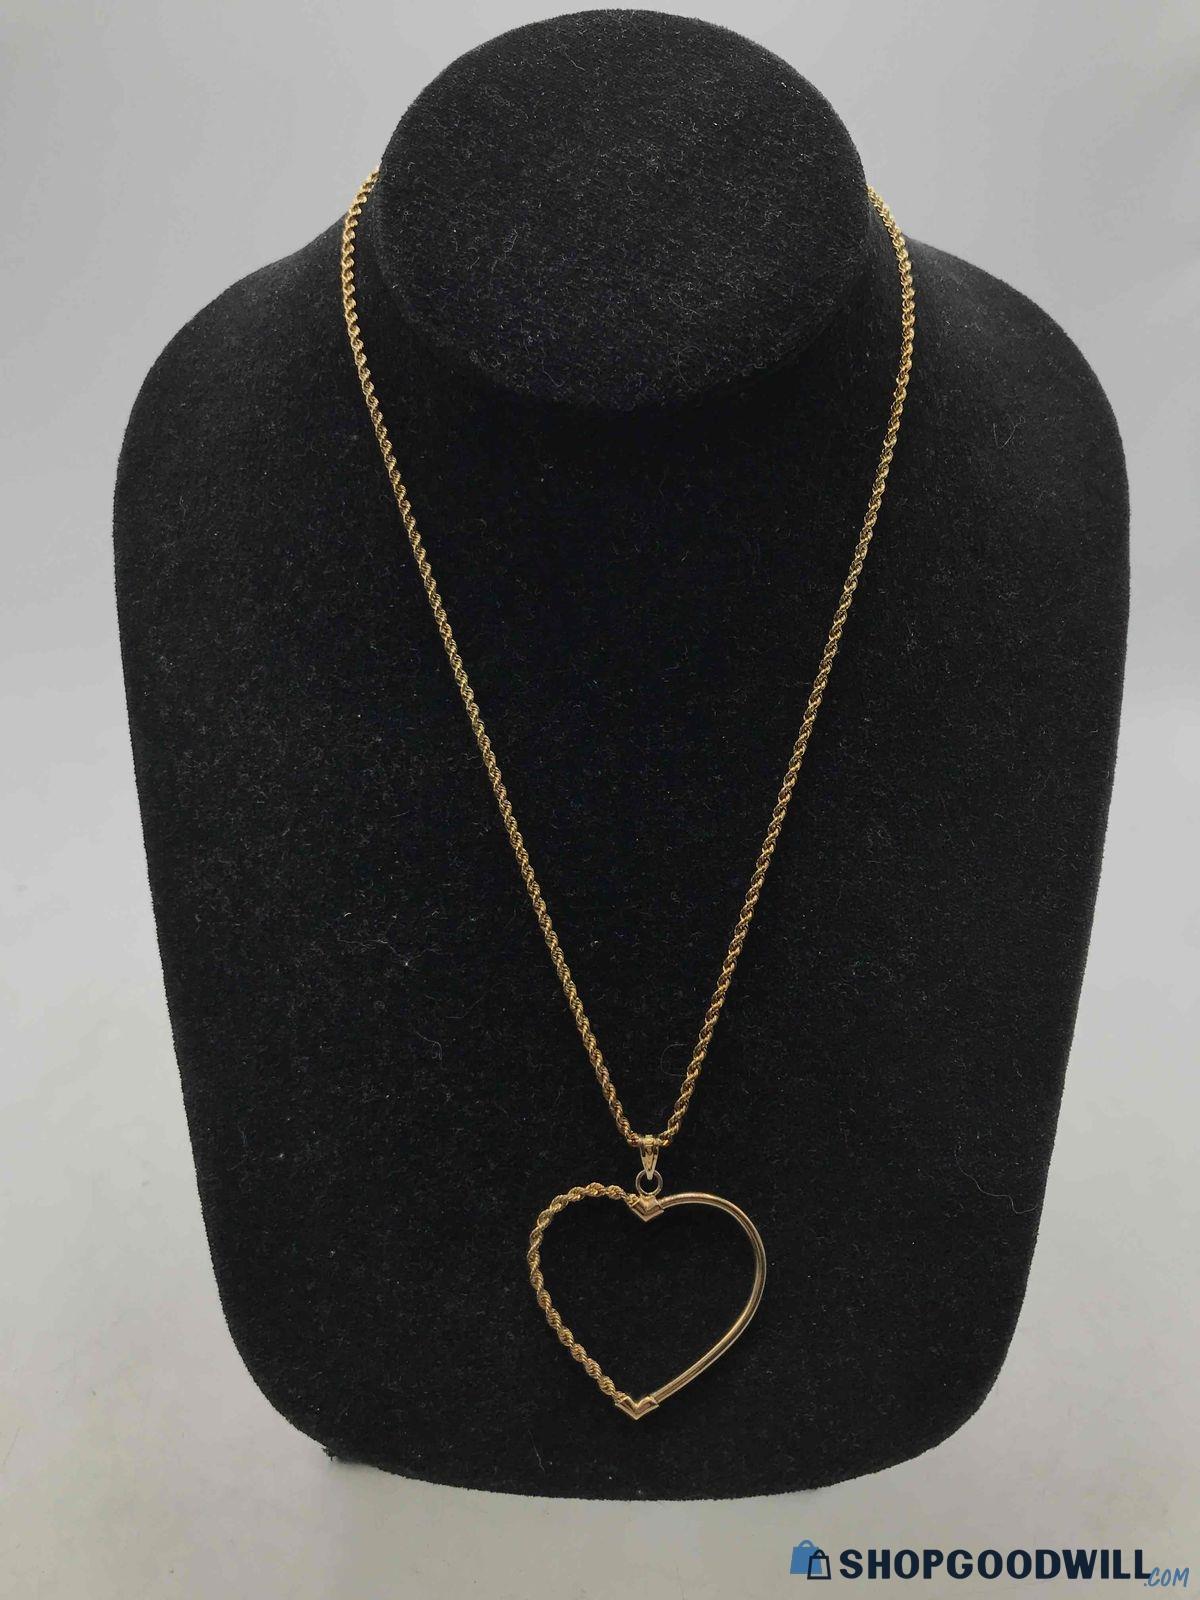 10K Gold Heart Necklace 3.4g - shopgoodwill.com